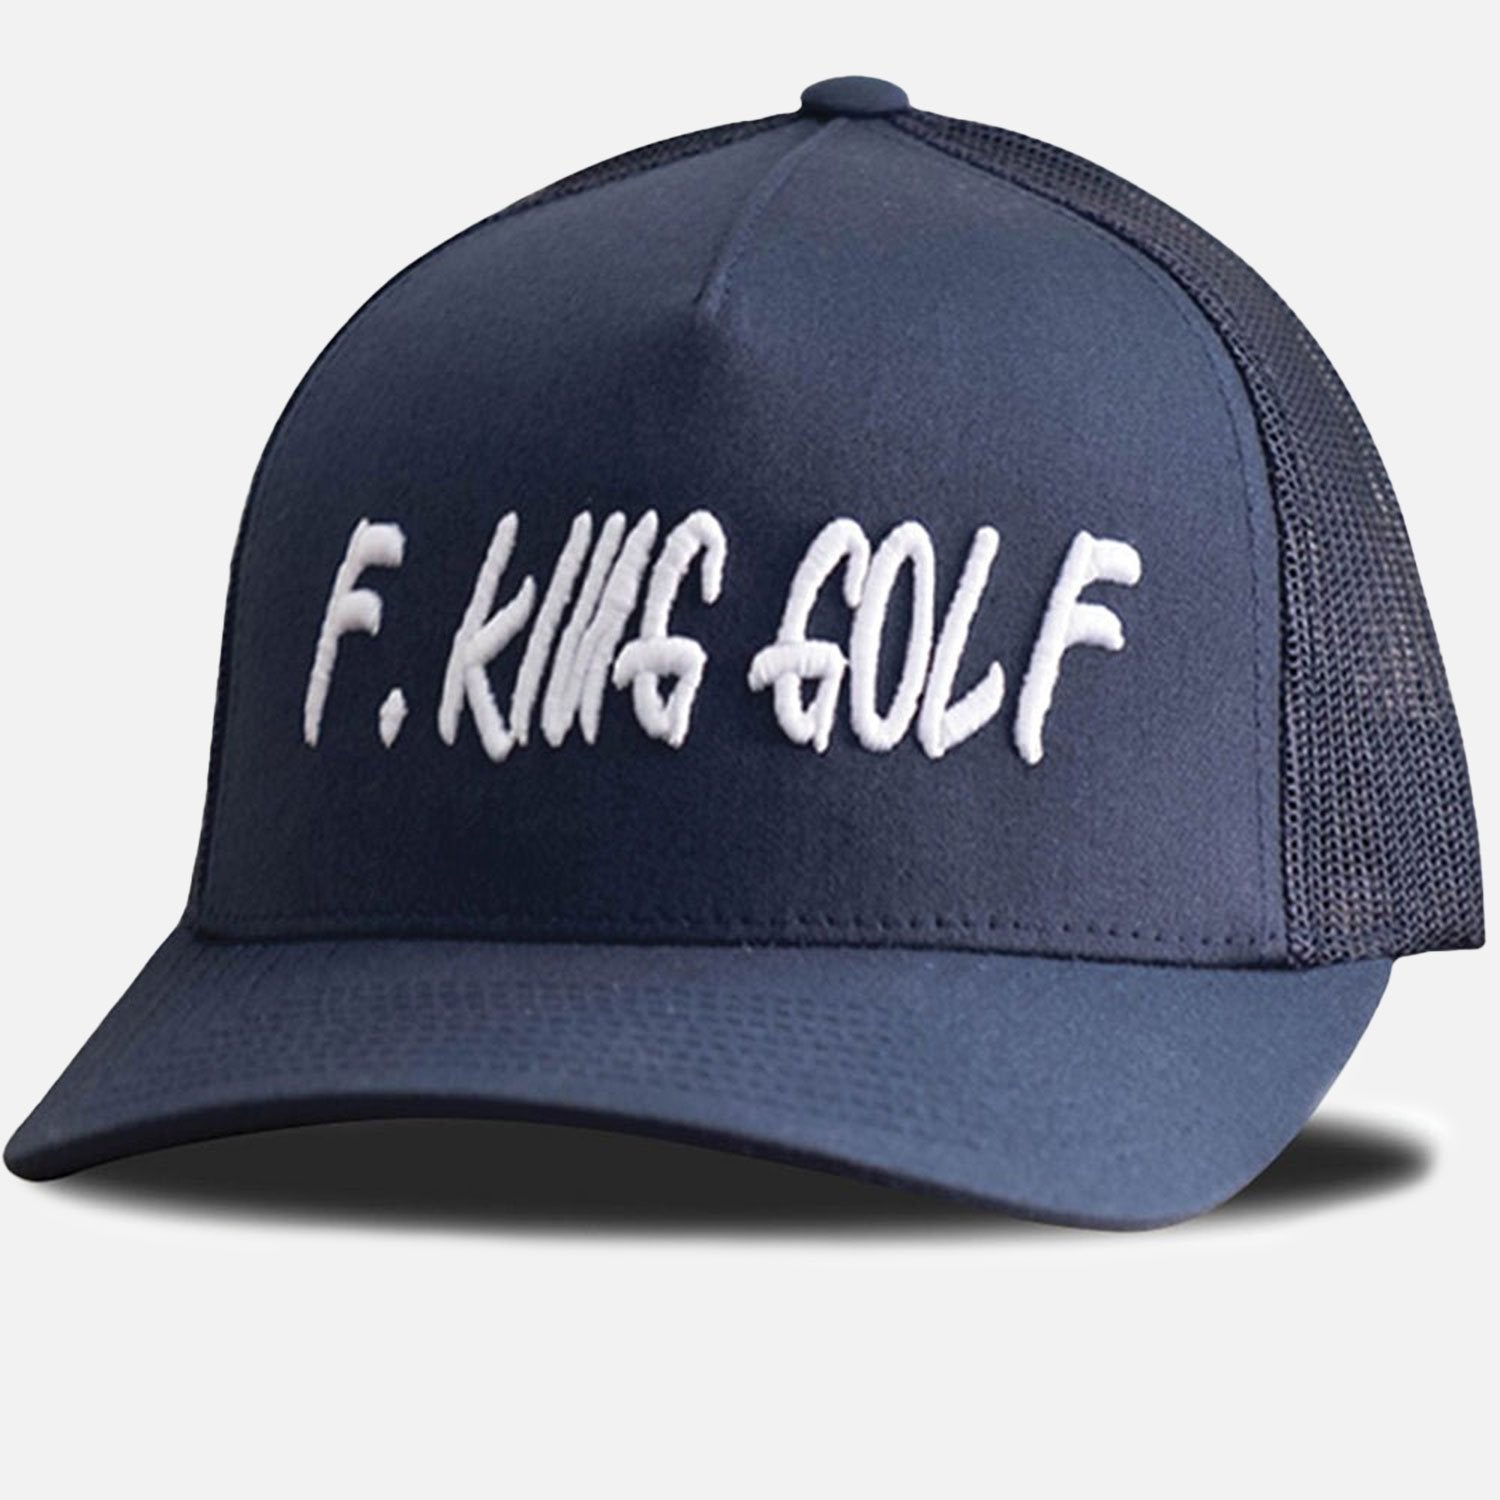 F. King Golf Hat - F. King Golf